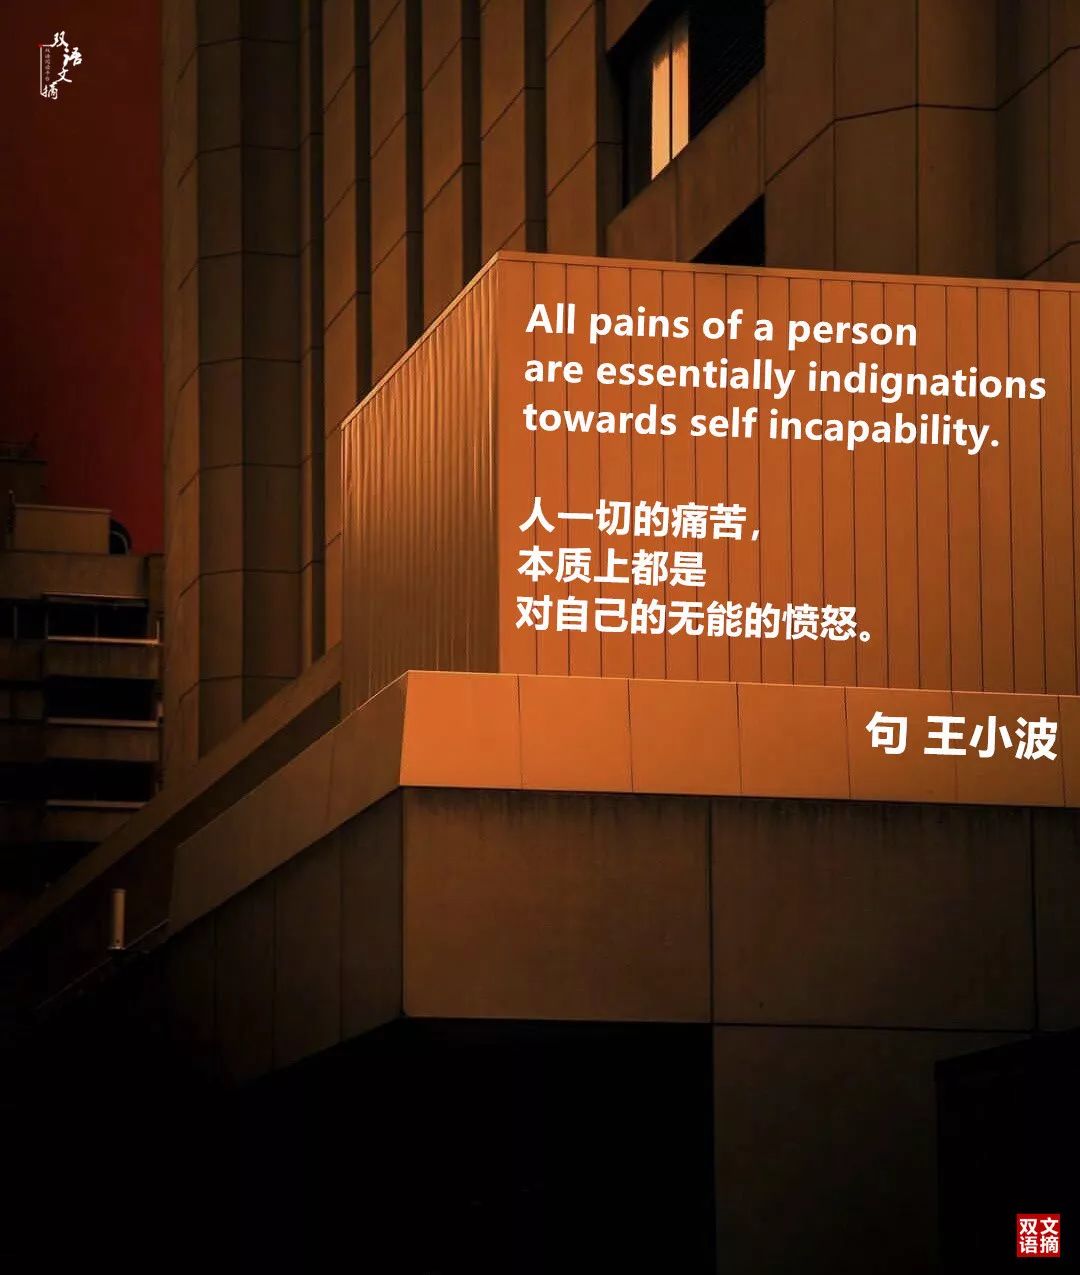 句 坂口安吾  are essentially indignations  towards self in